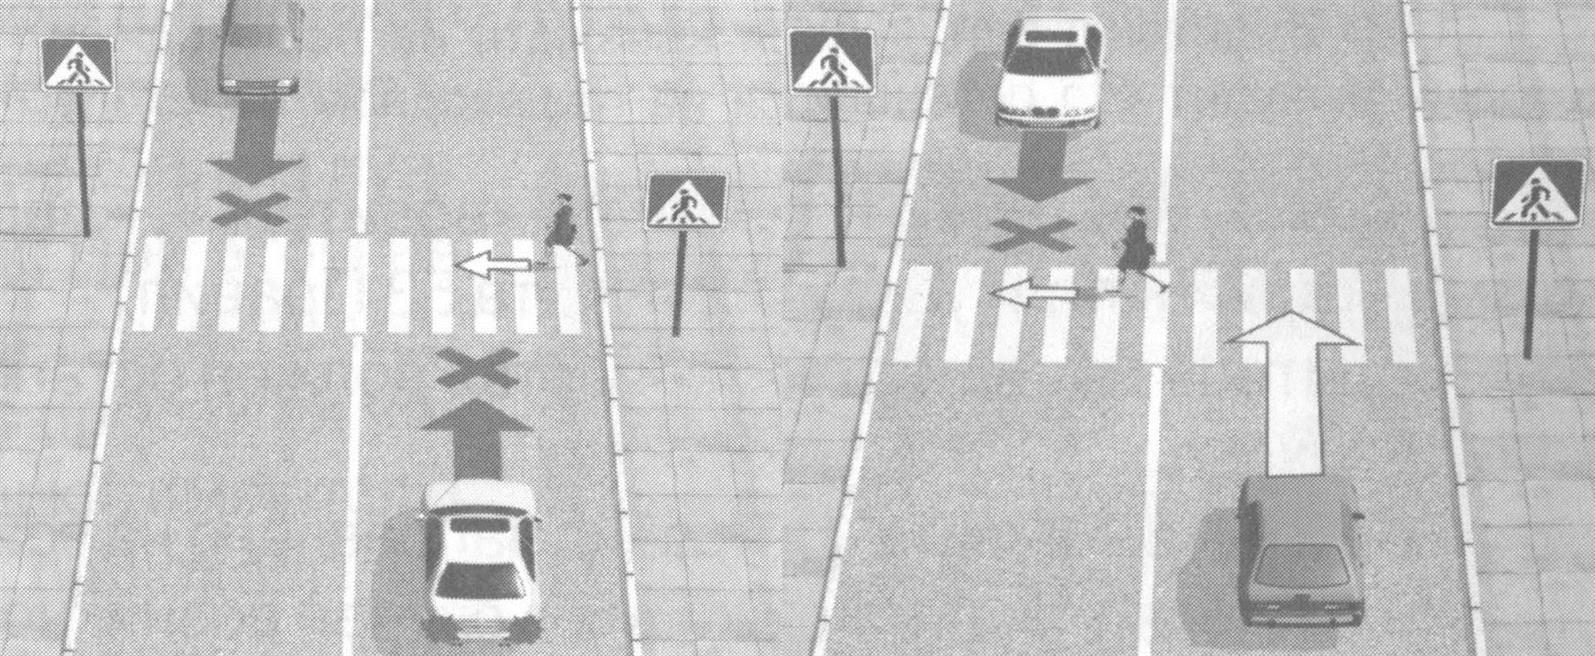 Правила пропуска пешеходов на пешеходном